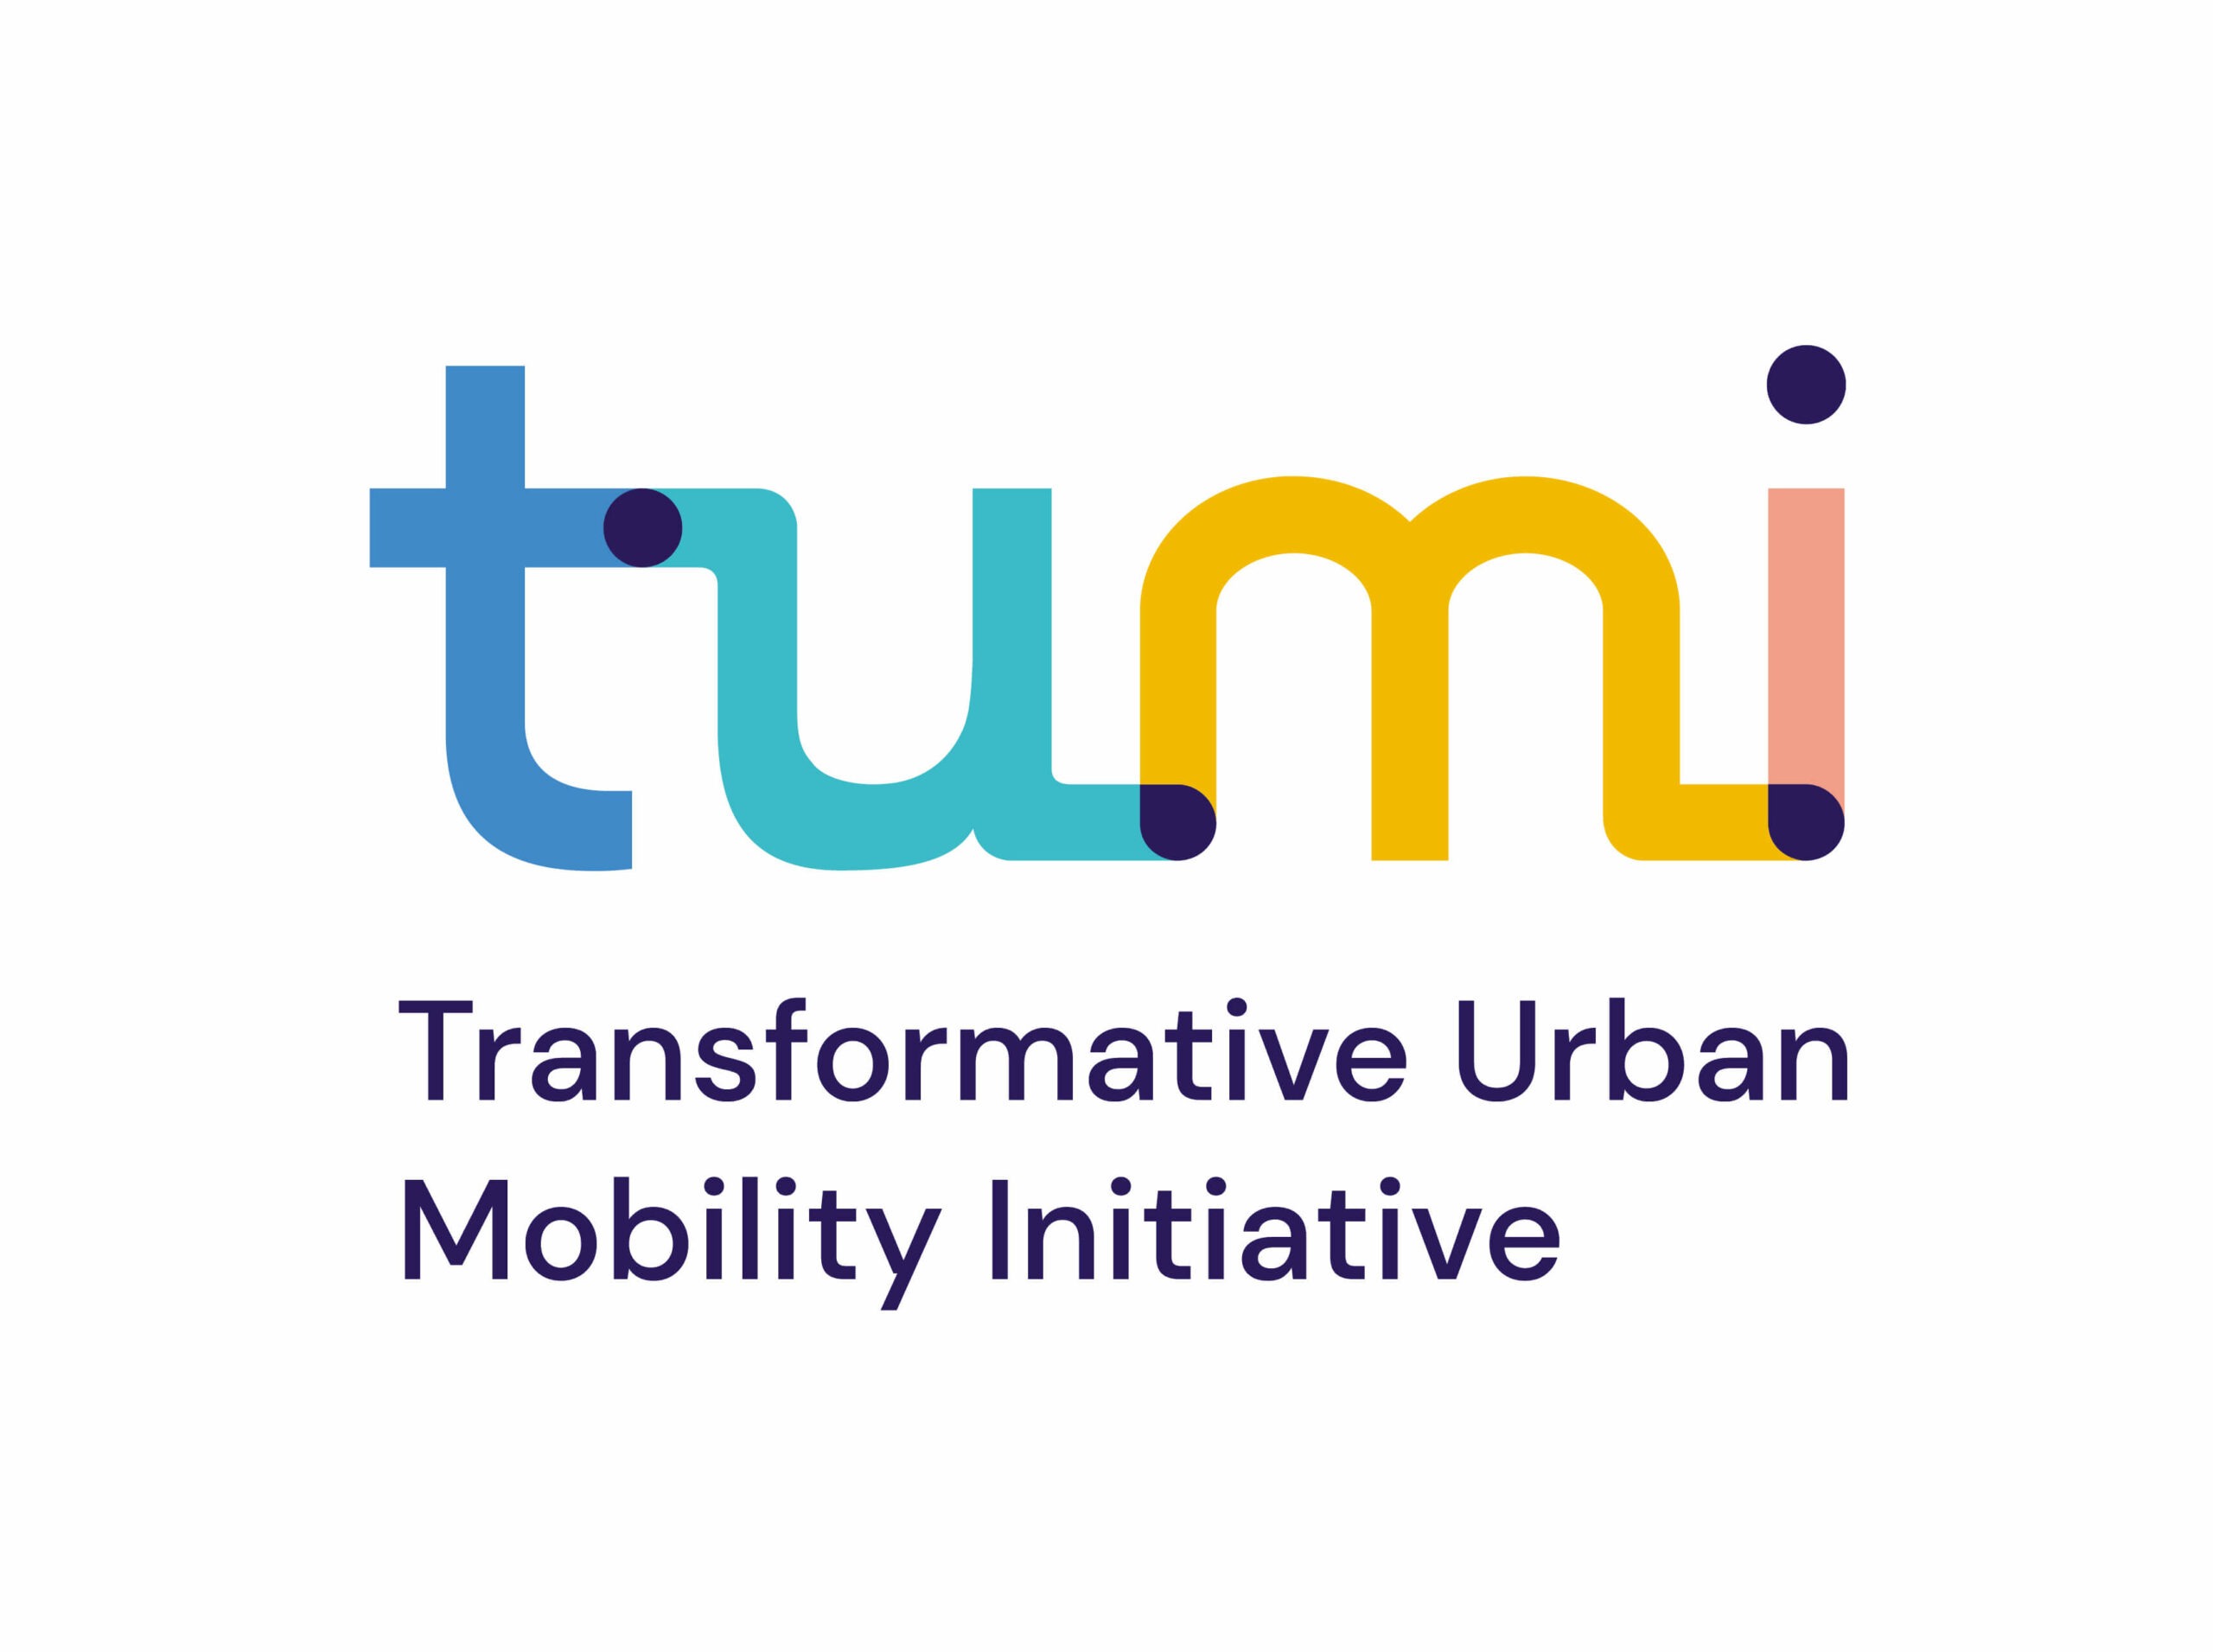 Das von glow entwickelte Logo von der Transformative Urban Mobility Initiative